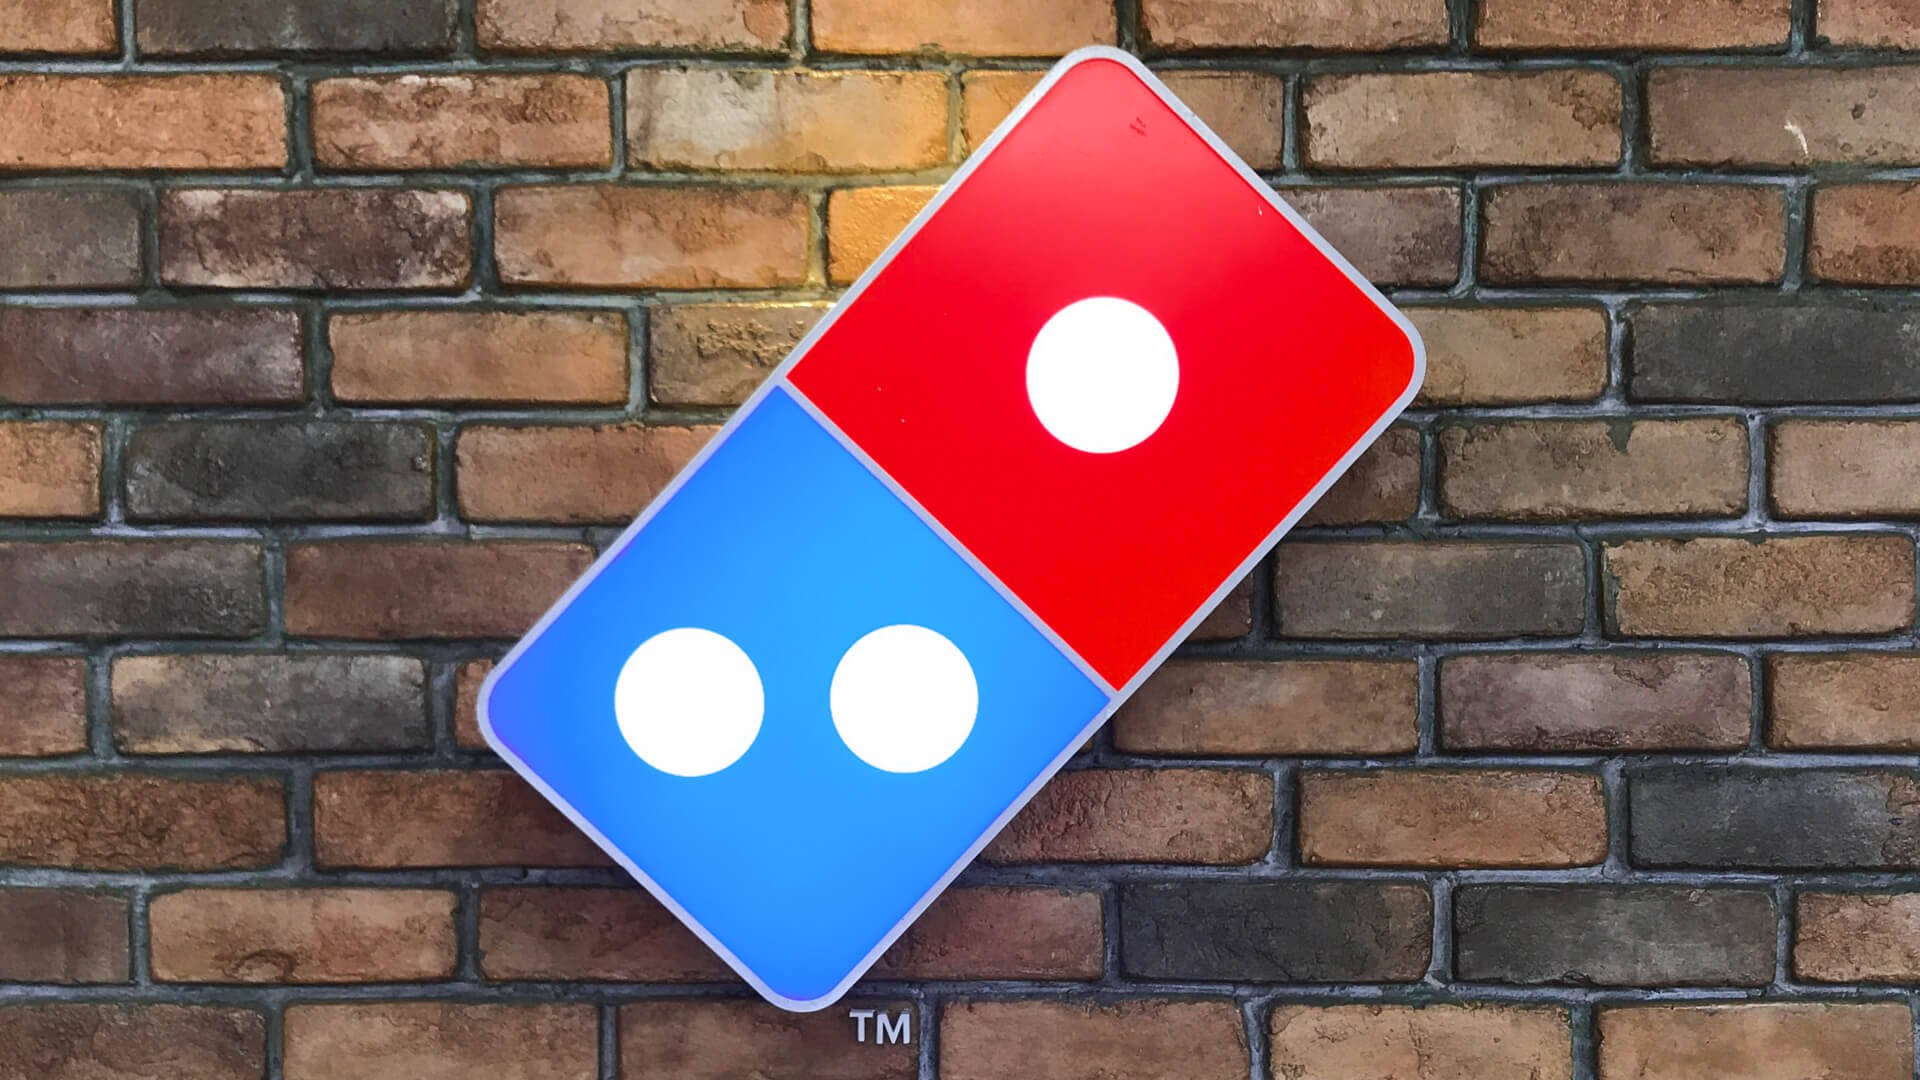 Logotipode Dominos Pizza En Una Pared De Ladrillo. Fondo de pantalla